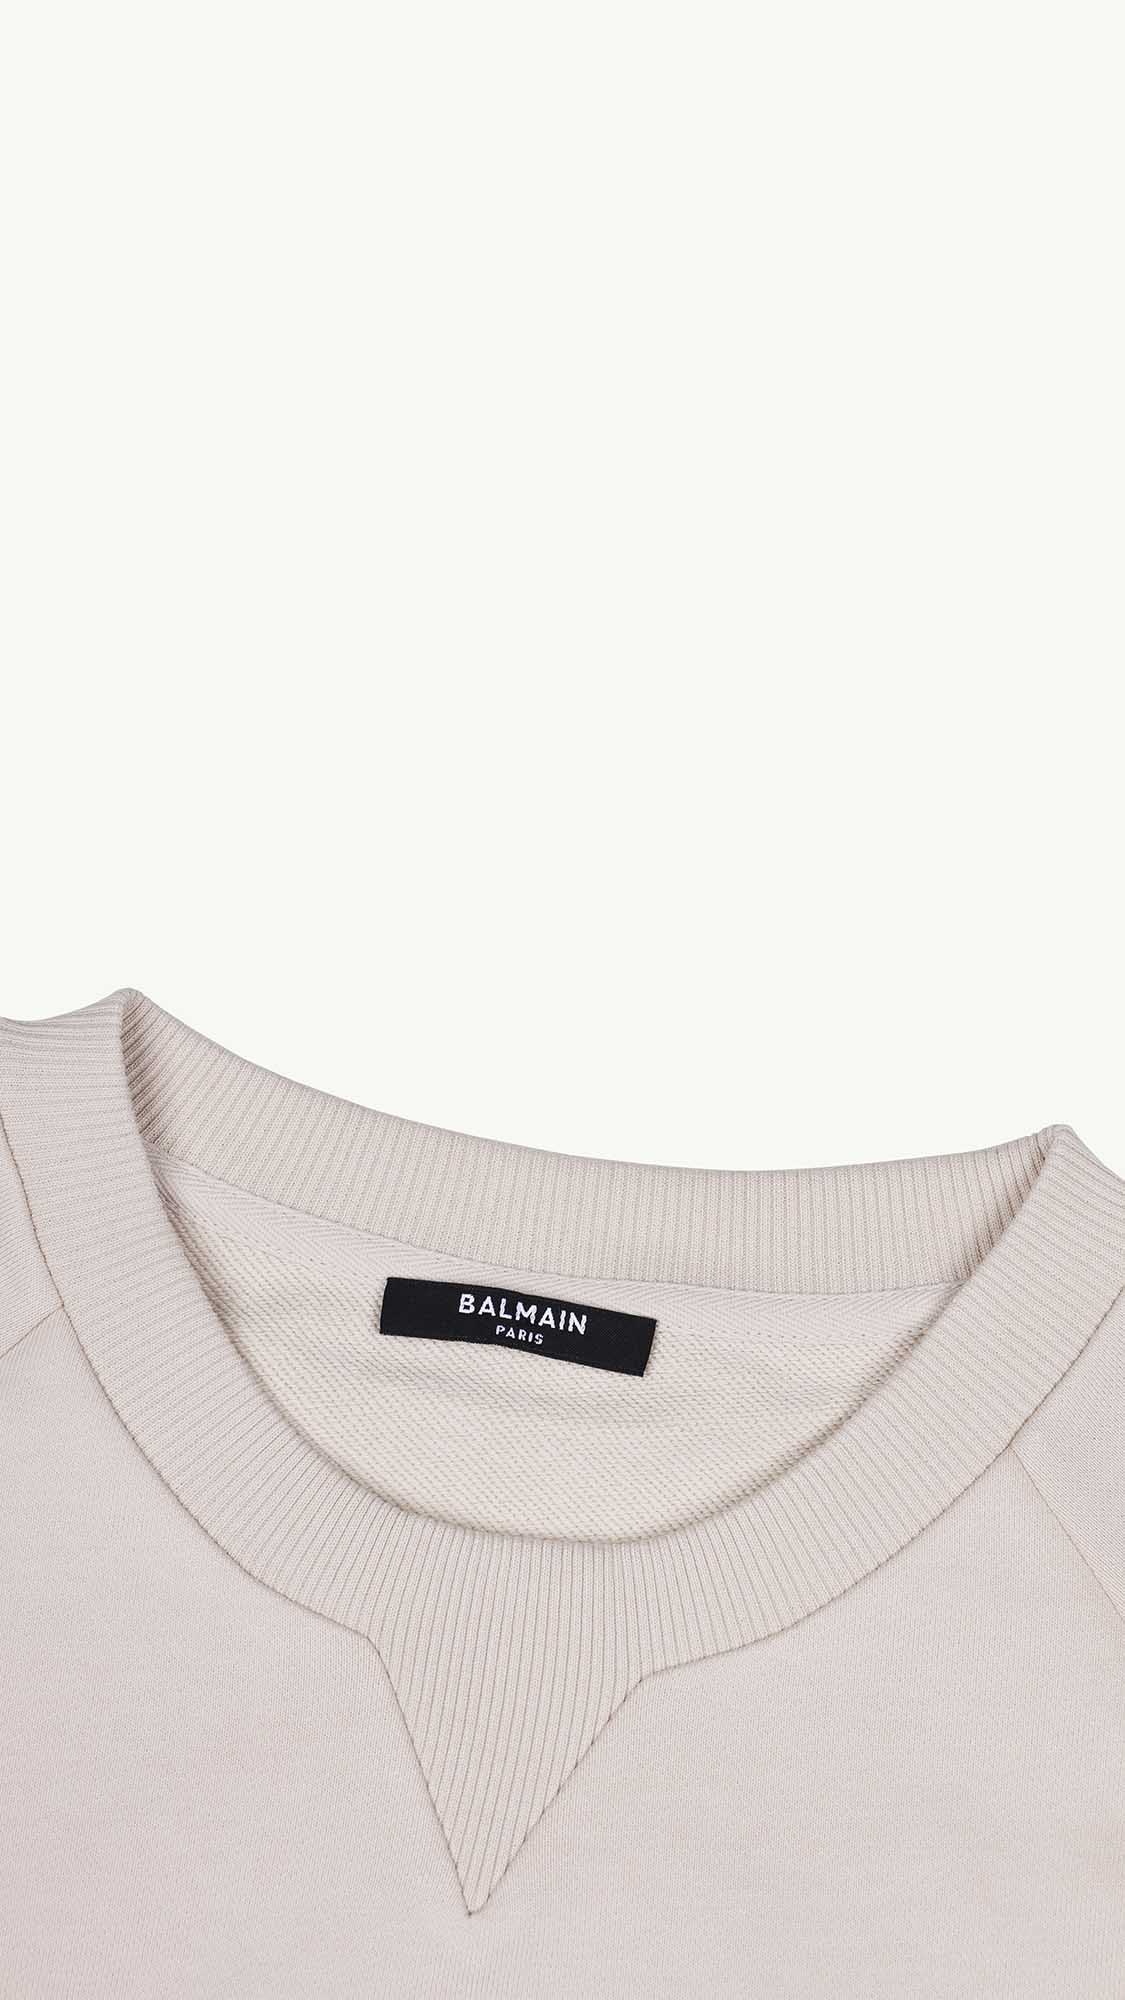 BALMAIN Women Balmain Paris Flocked Logo Sweatshirt in Beige/White 3